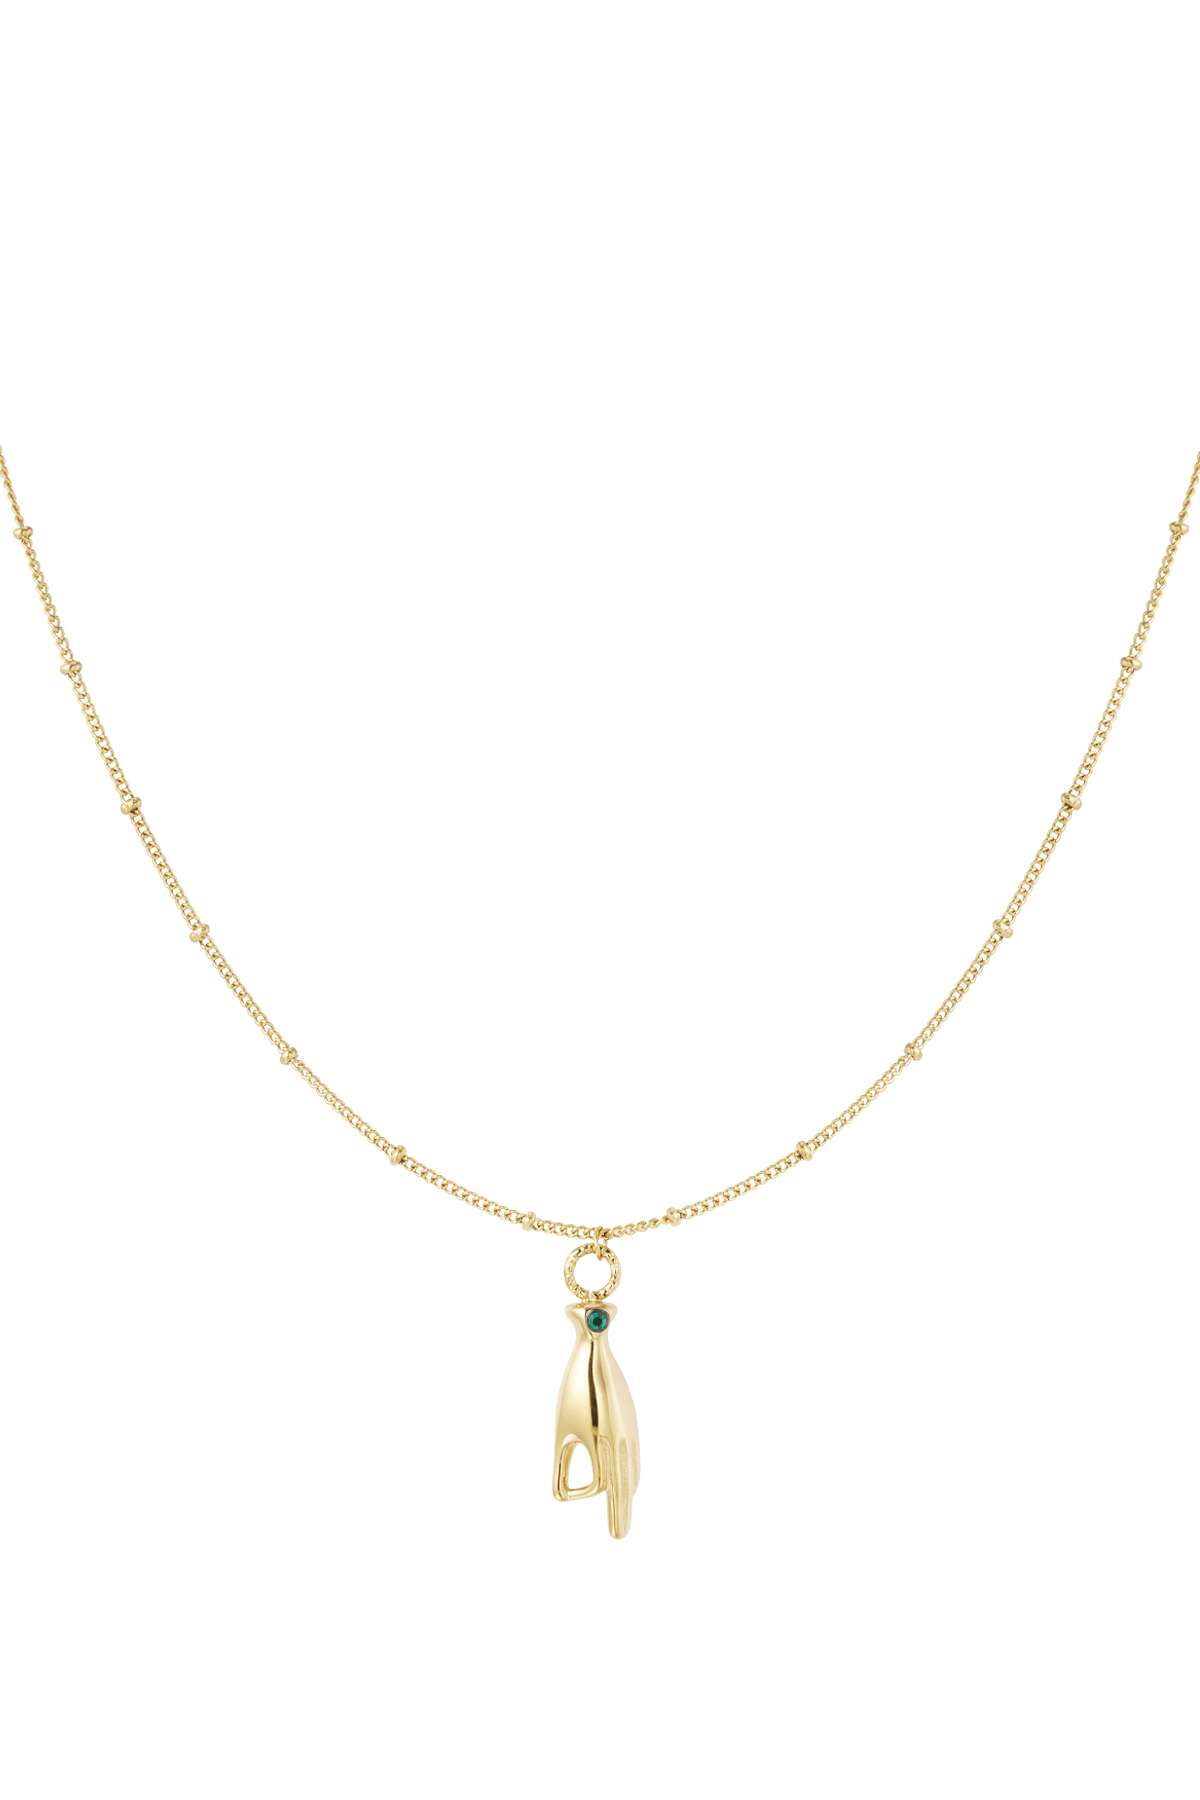 Halskette Handanhänger mit Stein – Gold/Grün